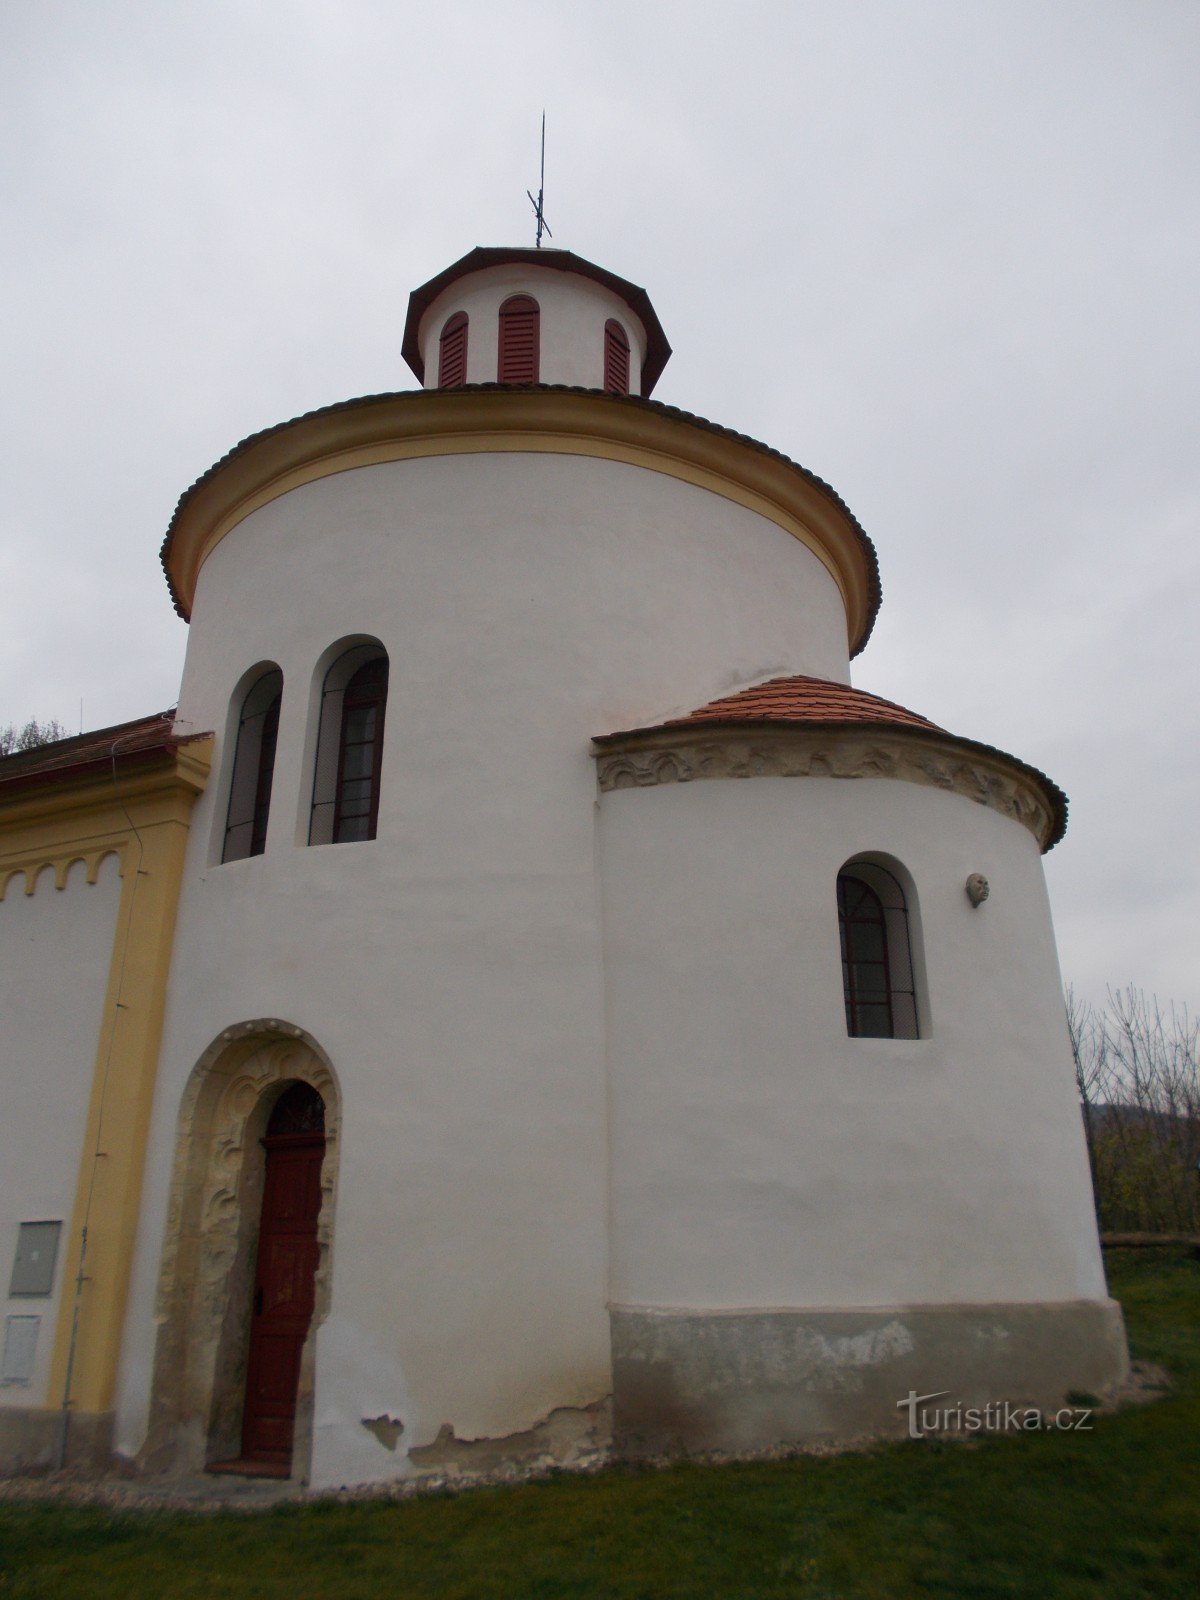 Εκκλησία του Αγίου Πέτρου και Παύλου στο Želkovice.